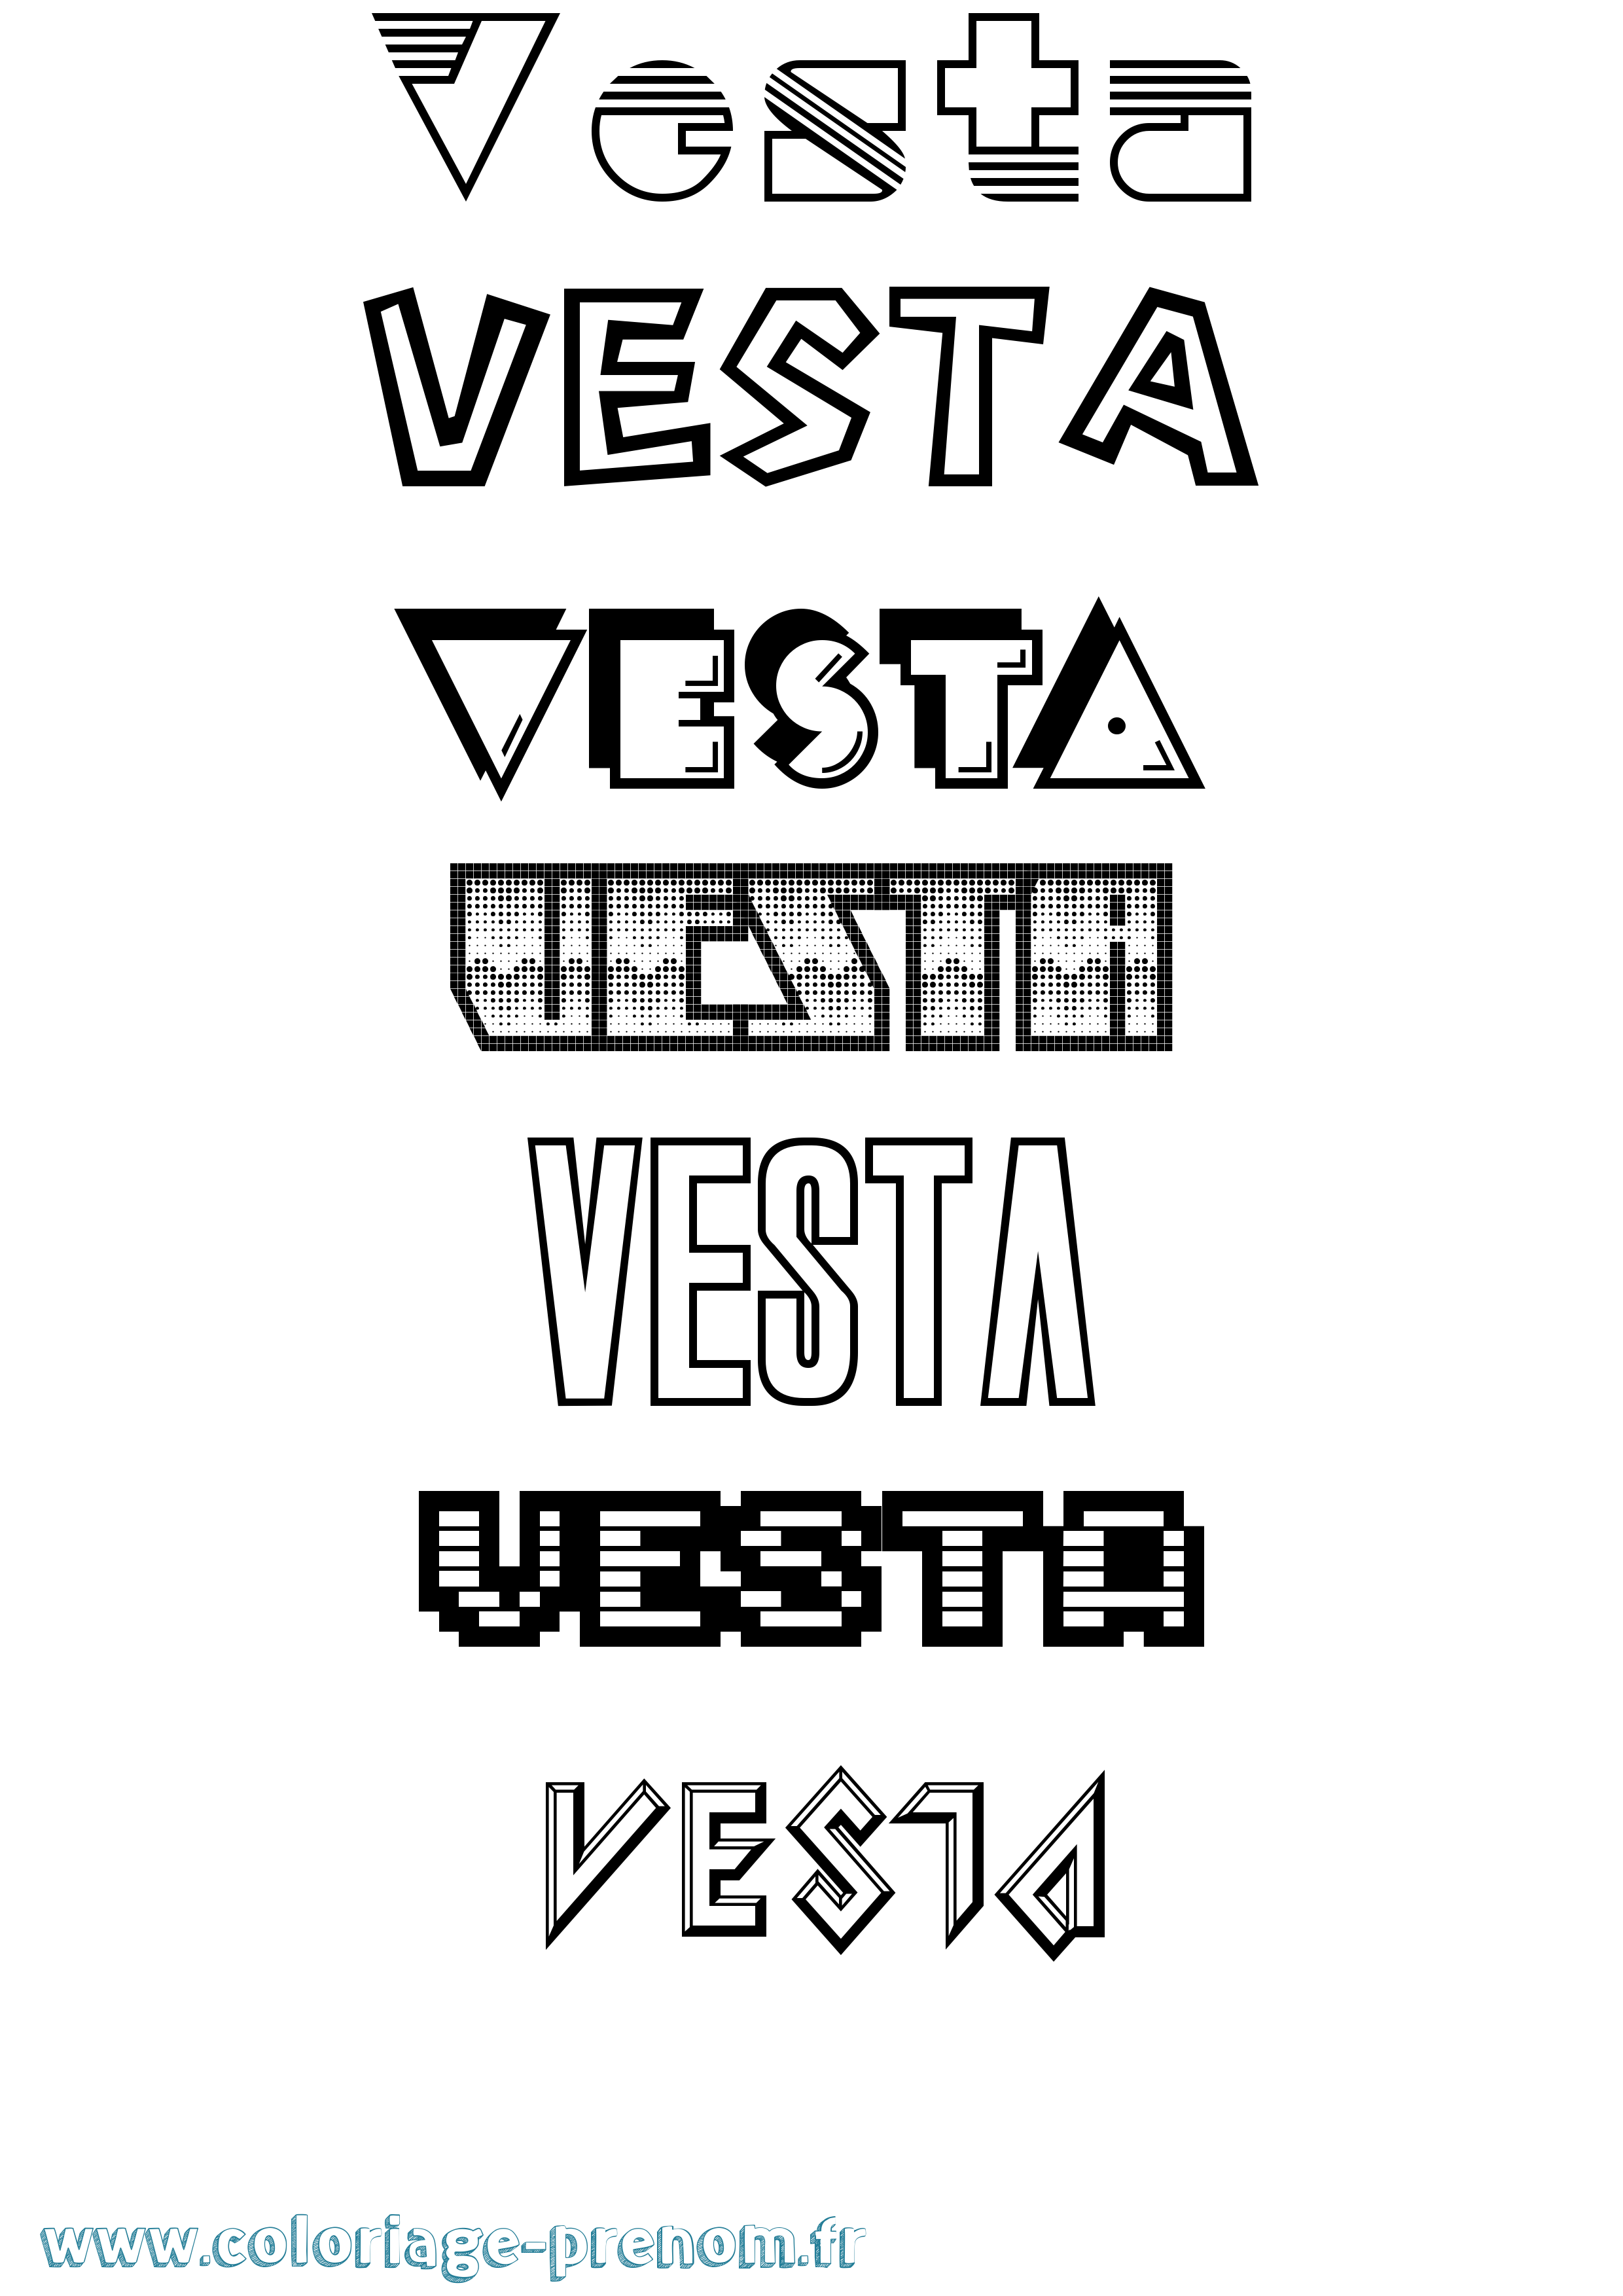 Coloriage prénom Vesta Jeux Vidéos